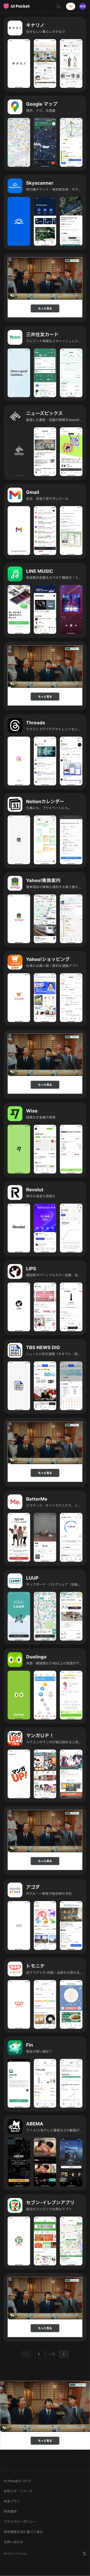 UI Pocket – アプリのUIデザインギャラリーのモバイルサイズの画像